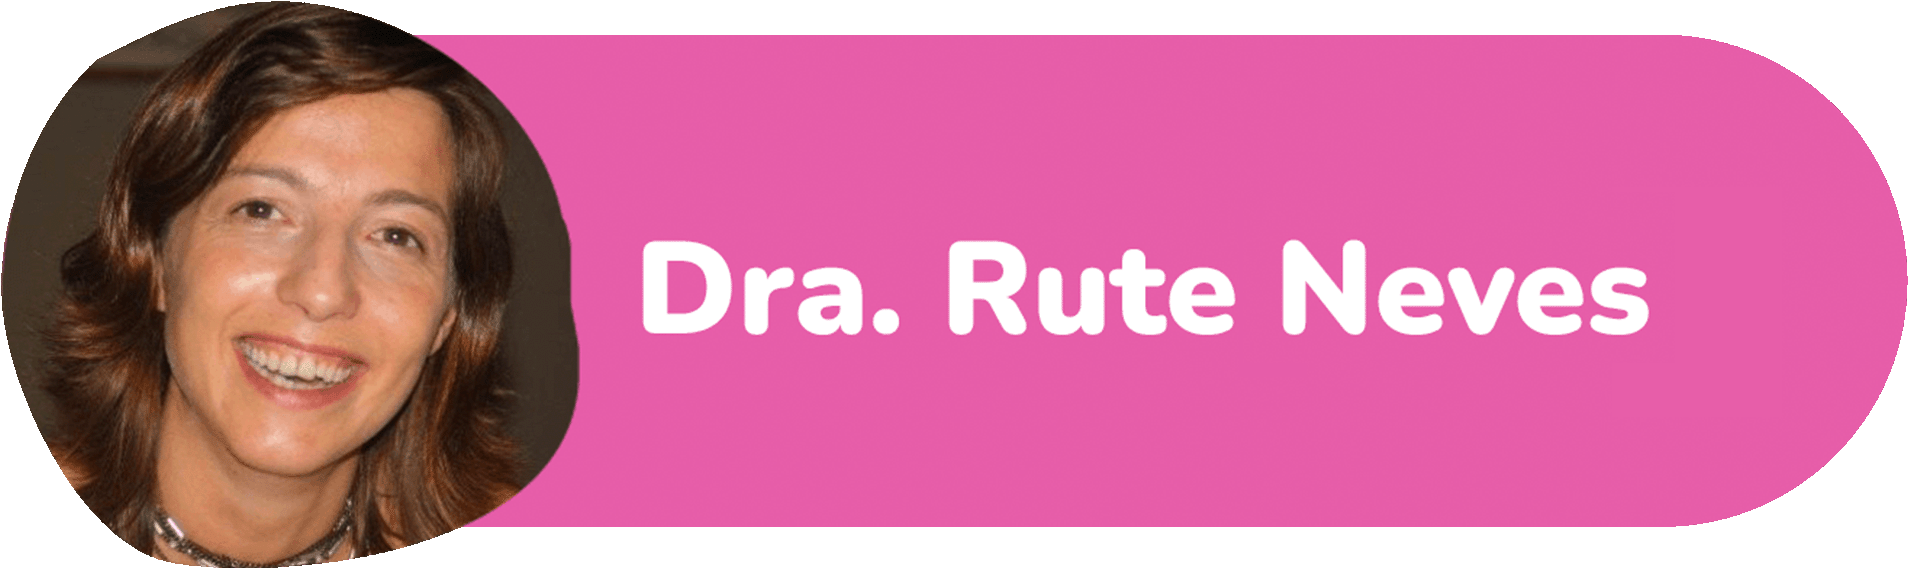 Dra. Rute